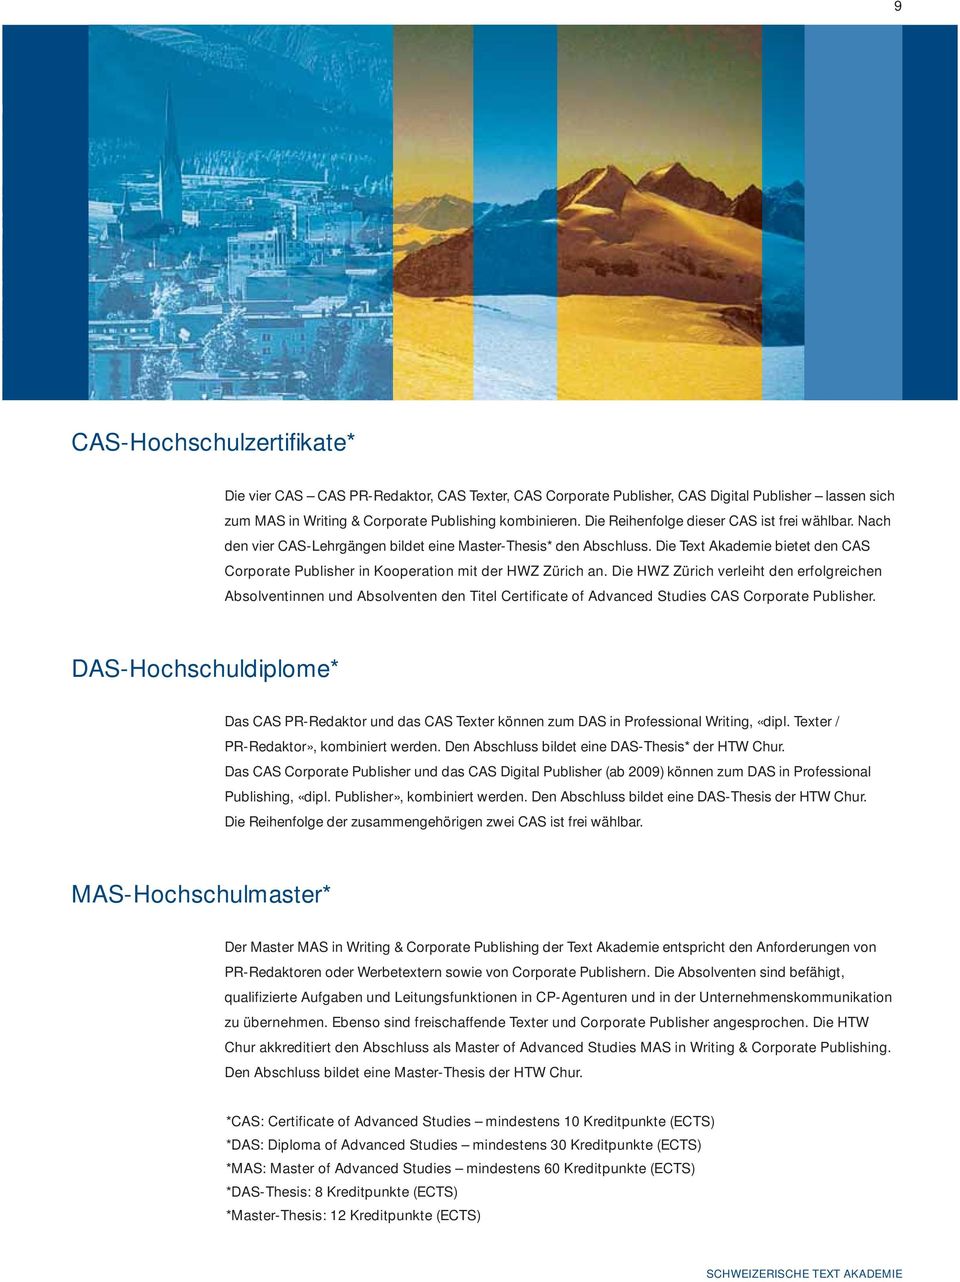 Die Text Akademie bietet den CAS Corporate Publisher in Kooperation mit der HWZ Zürich an.